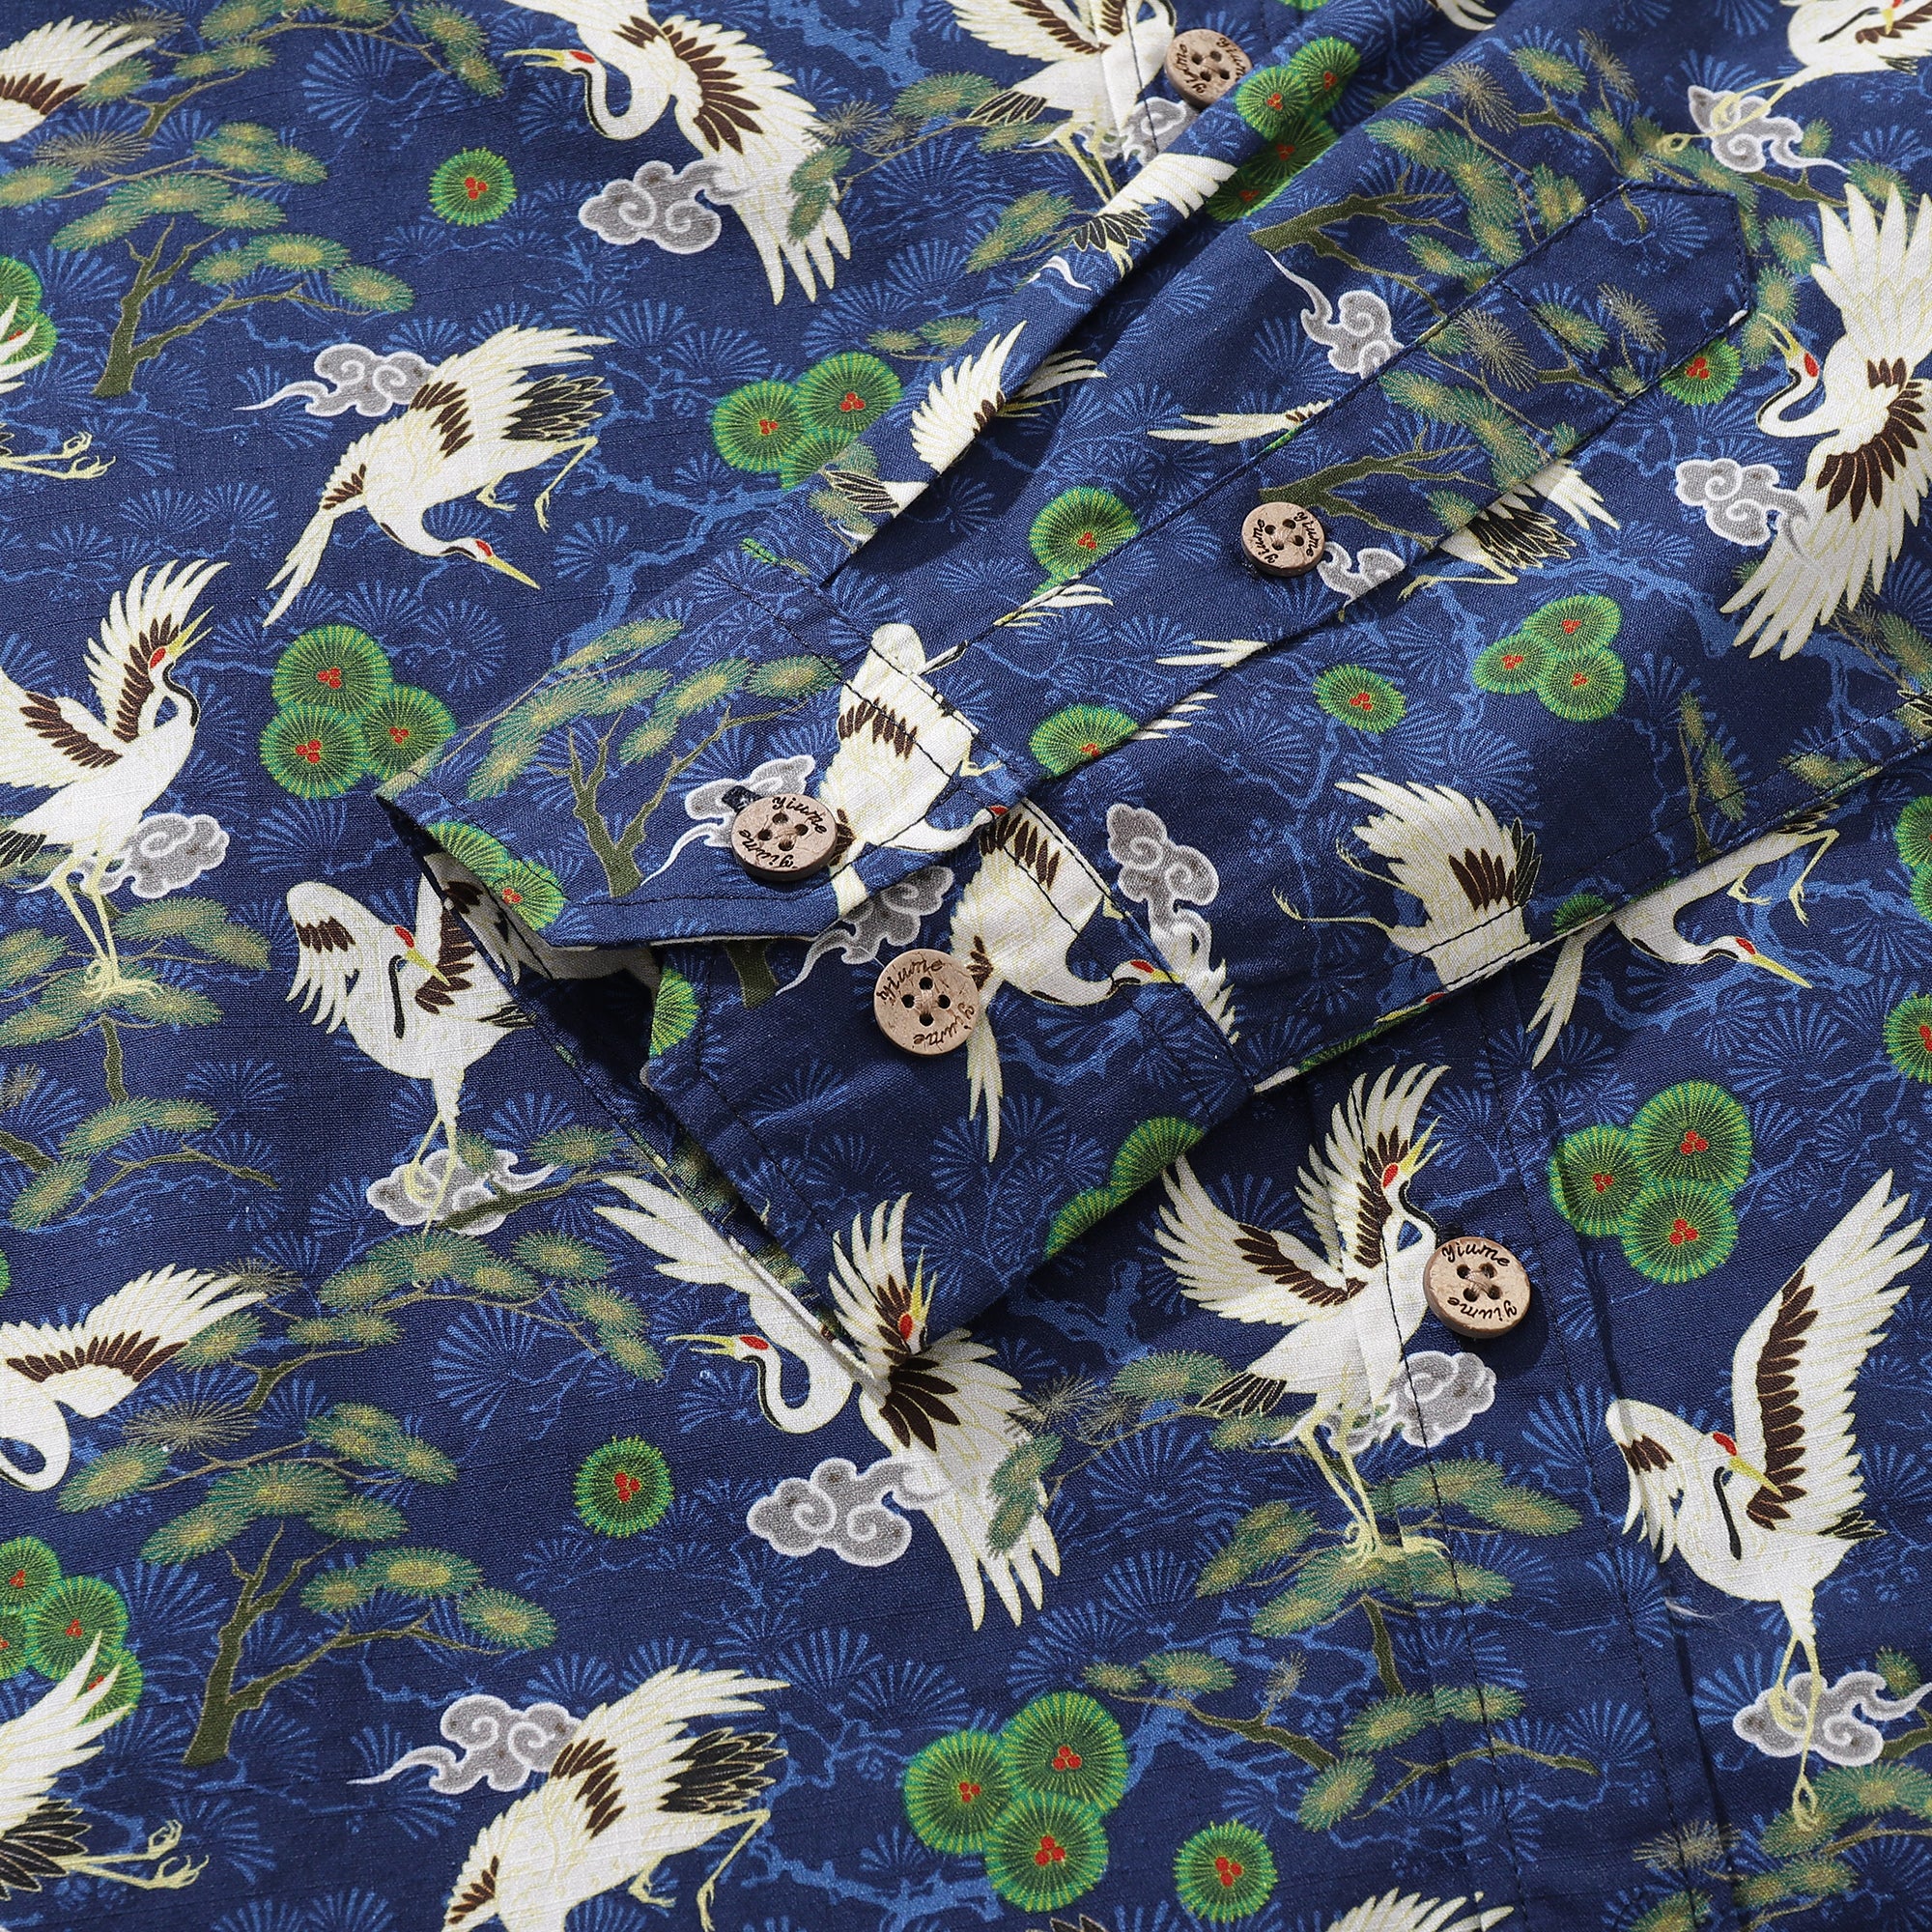 Men's Hawaiian Shirt Cranes Dancing in the Sky Cotton Button-down Long Sleeve Aloha Shirt